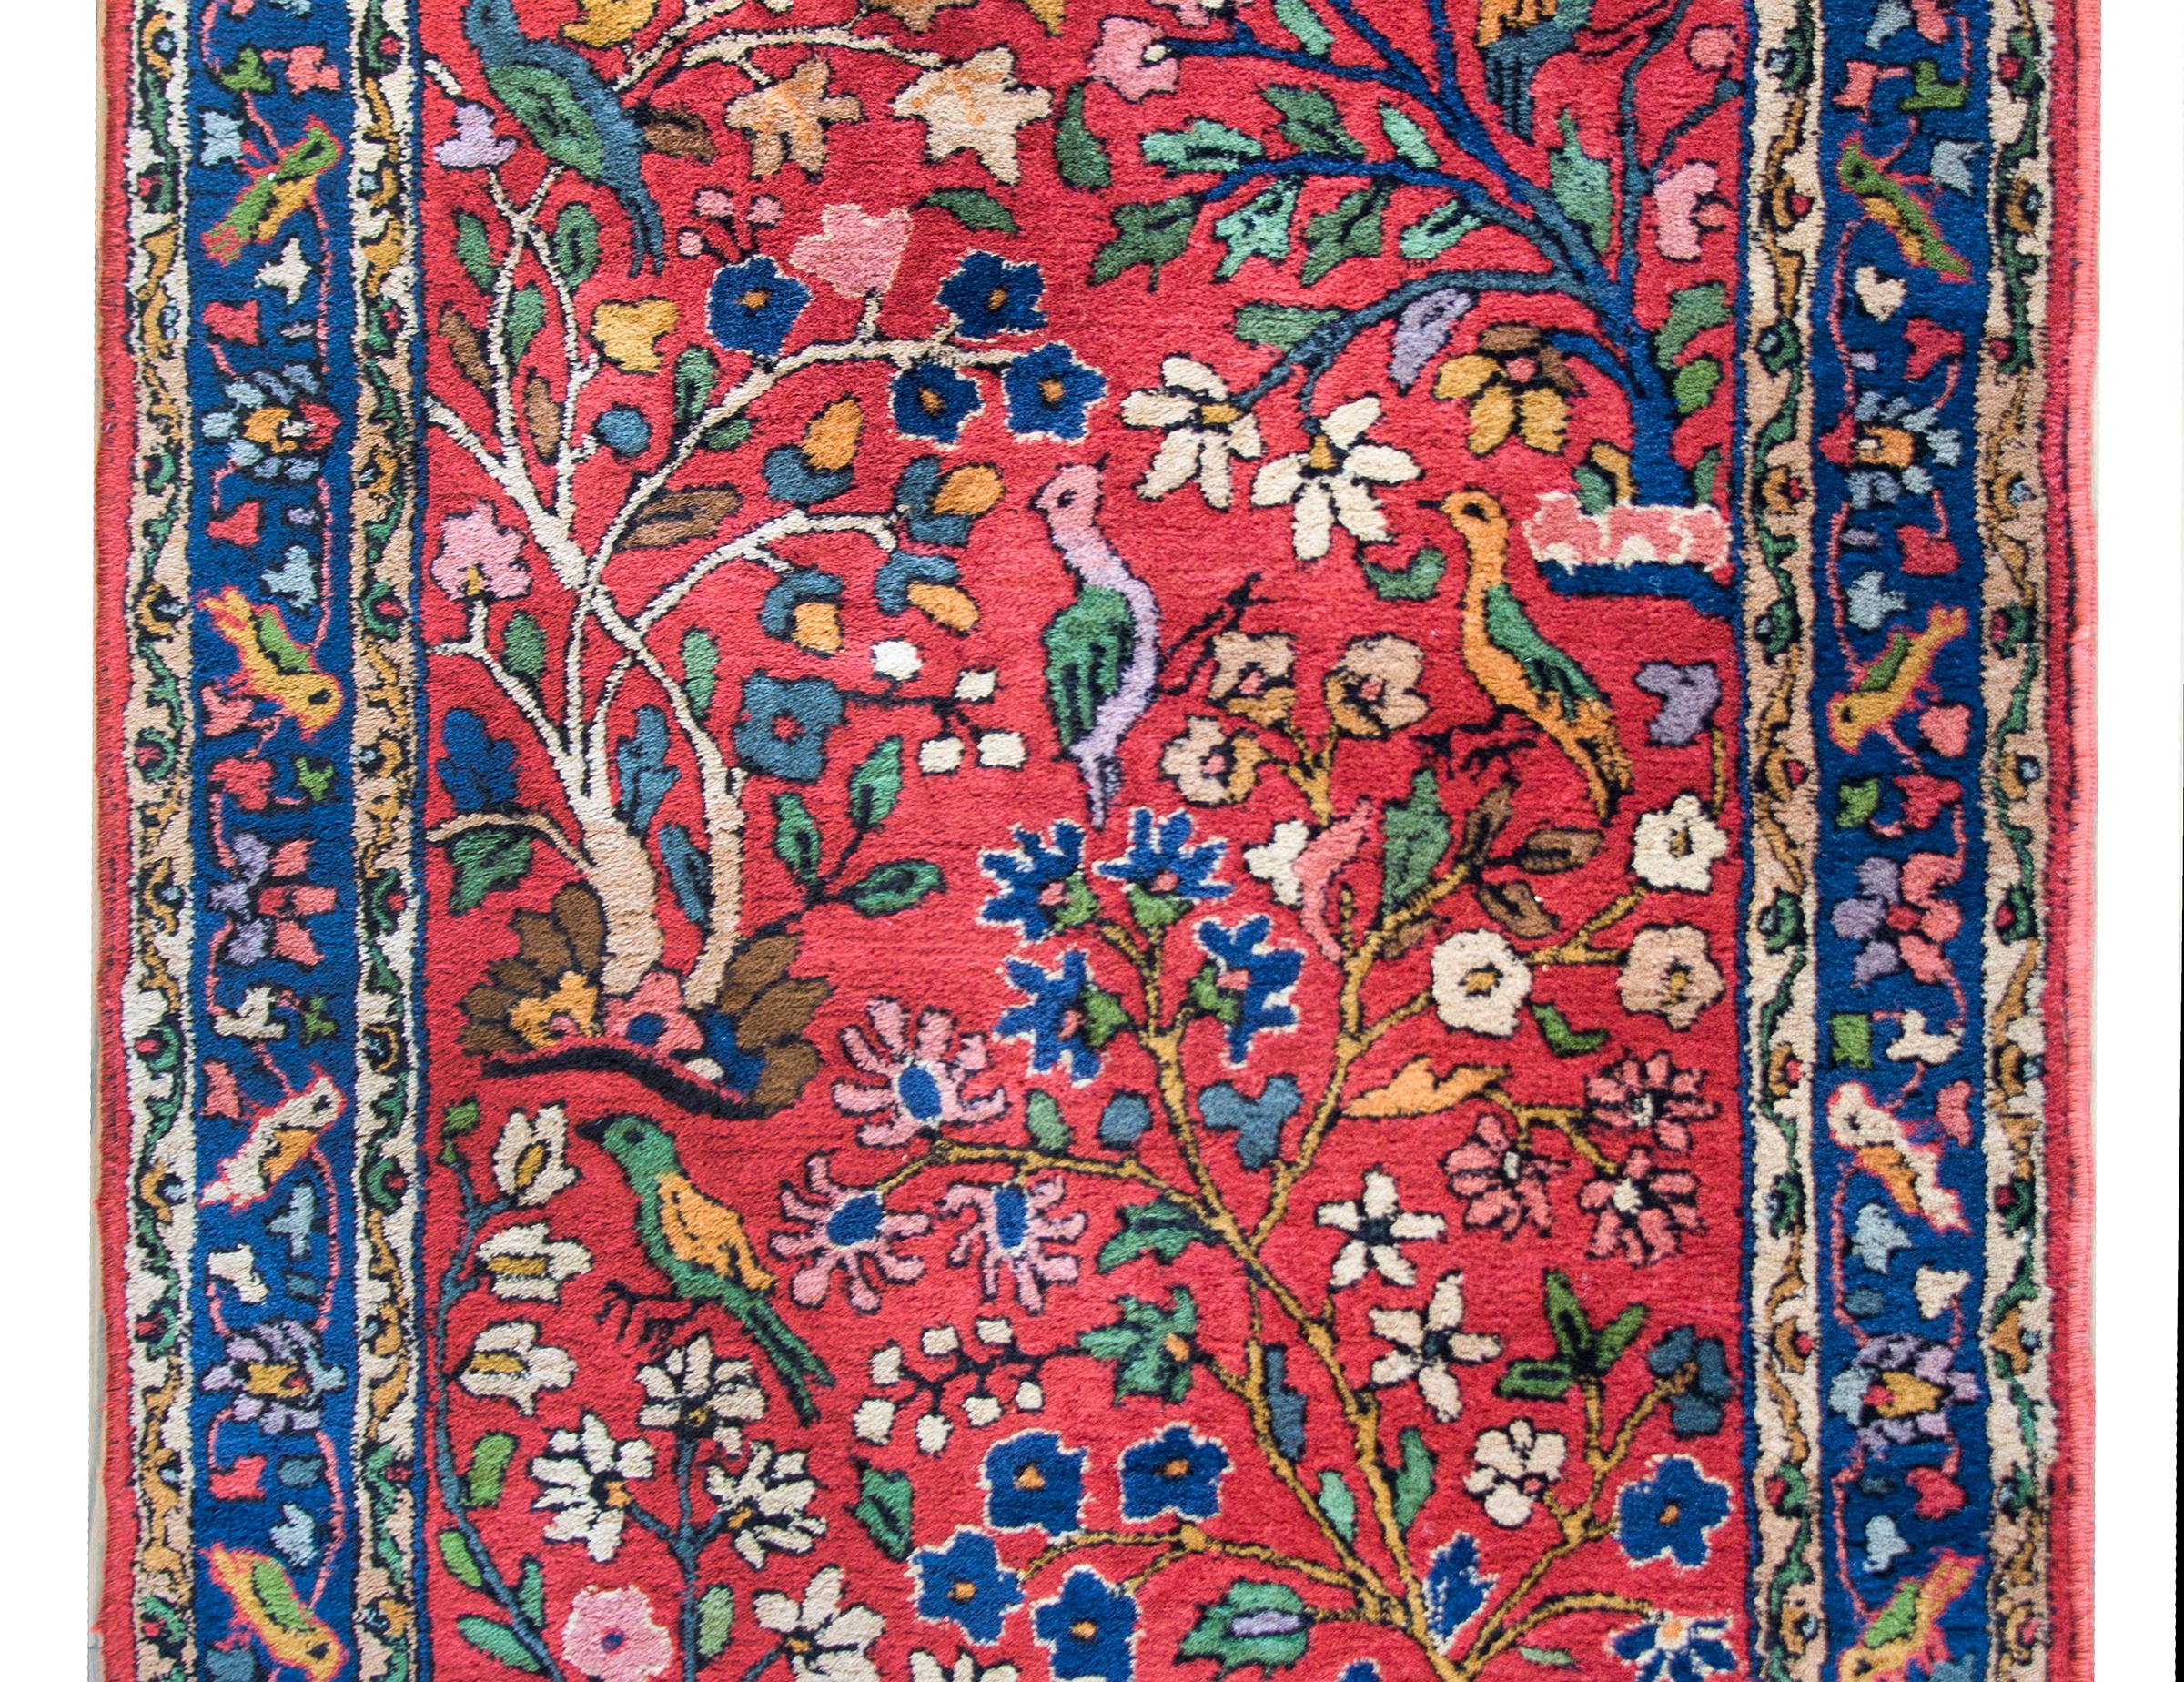 Ein verspielter deutscher Tetex-Teppich aus der Mitte des 20. Jahrhunderts mit einem Allover-Lebensbaum-Muster mit unzähligen blühenden Bäumen mit mehrfarbigen Blüten und Blättern sowie mehreren Vögeln, die alle vor einem karmesinroten Hintergrund